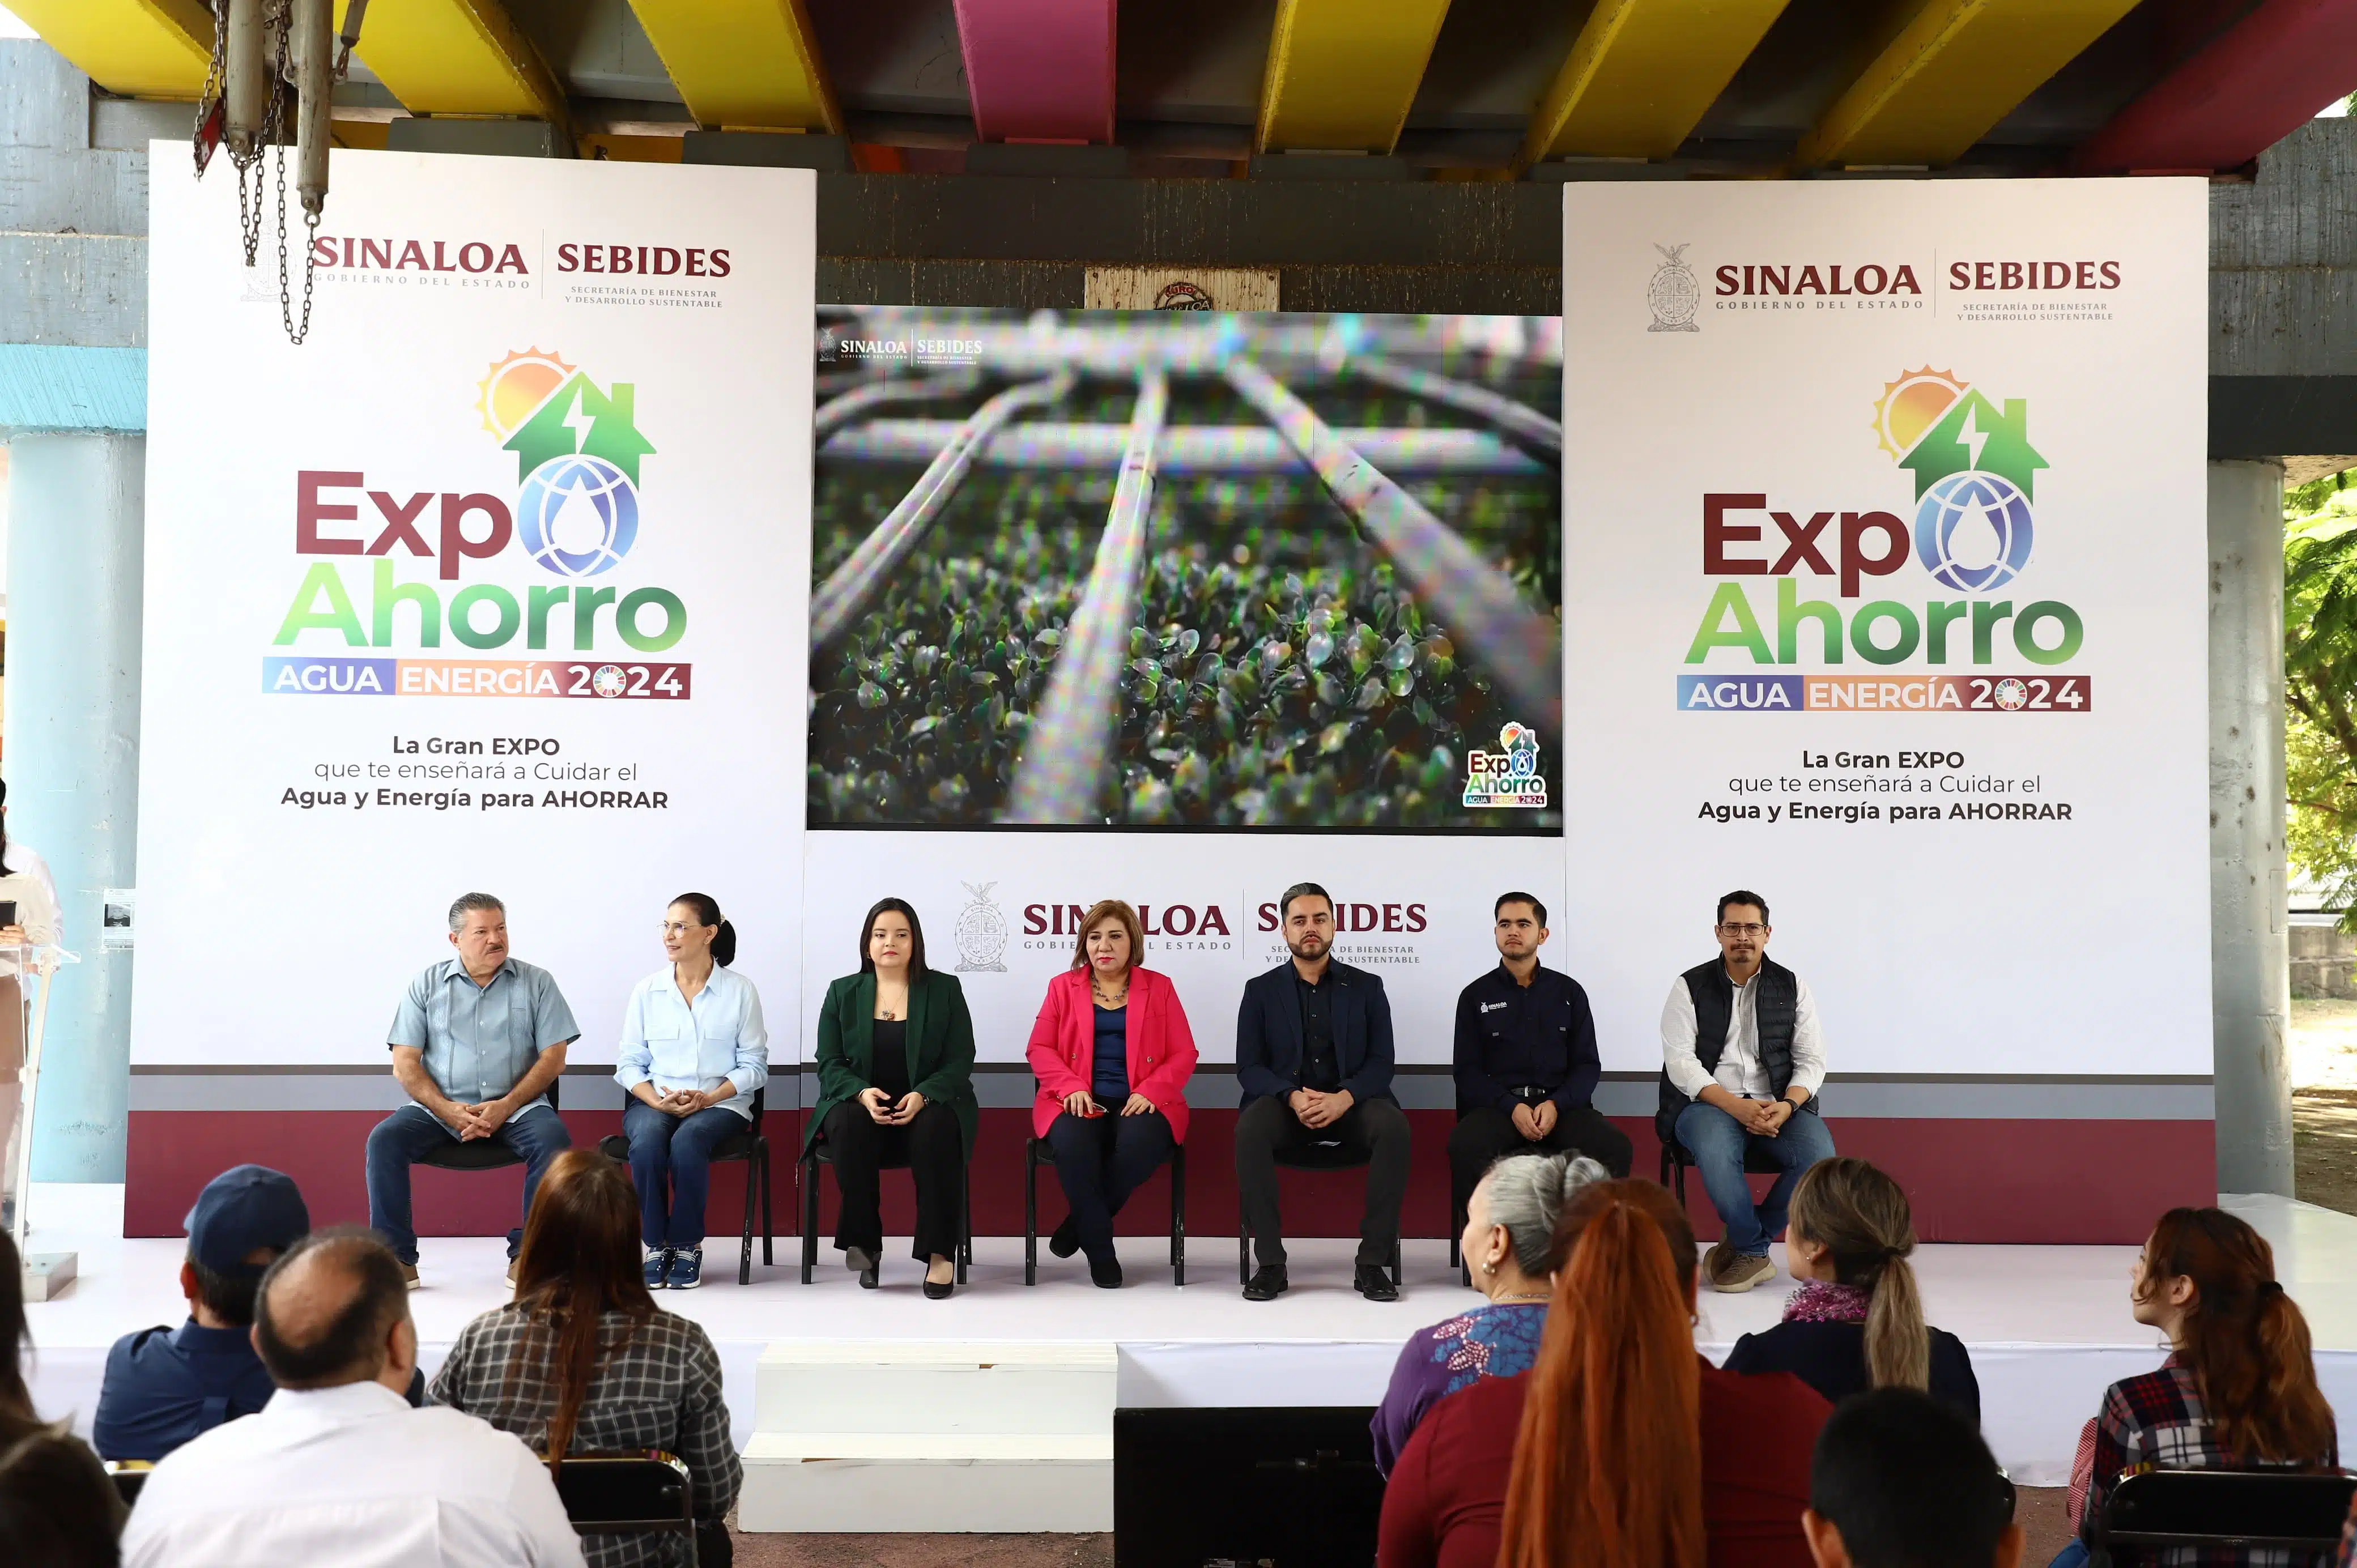 Expo Ahorro Agua y Energía 202424